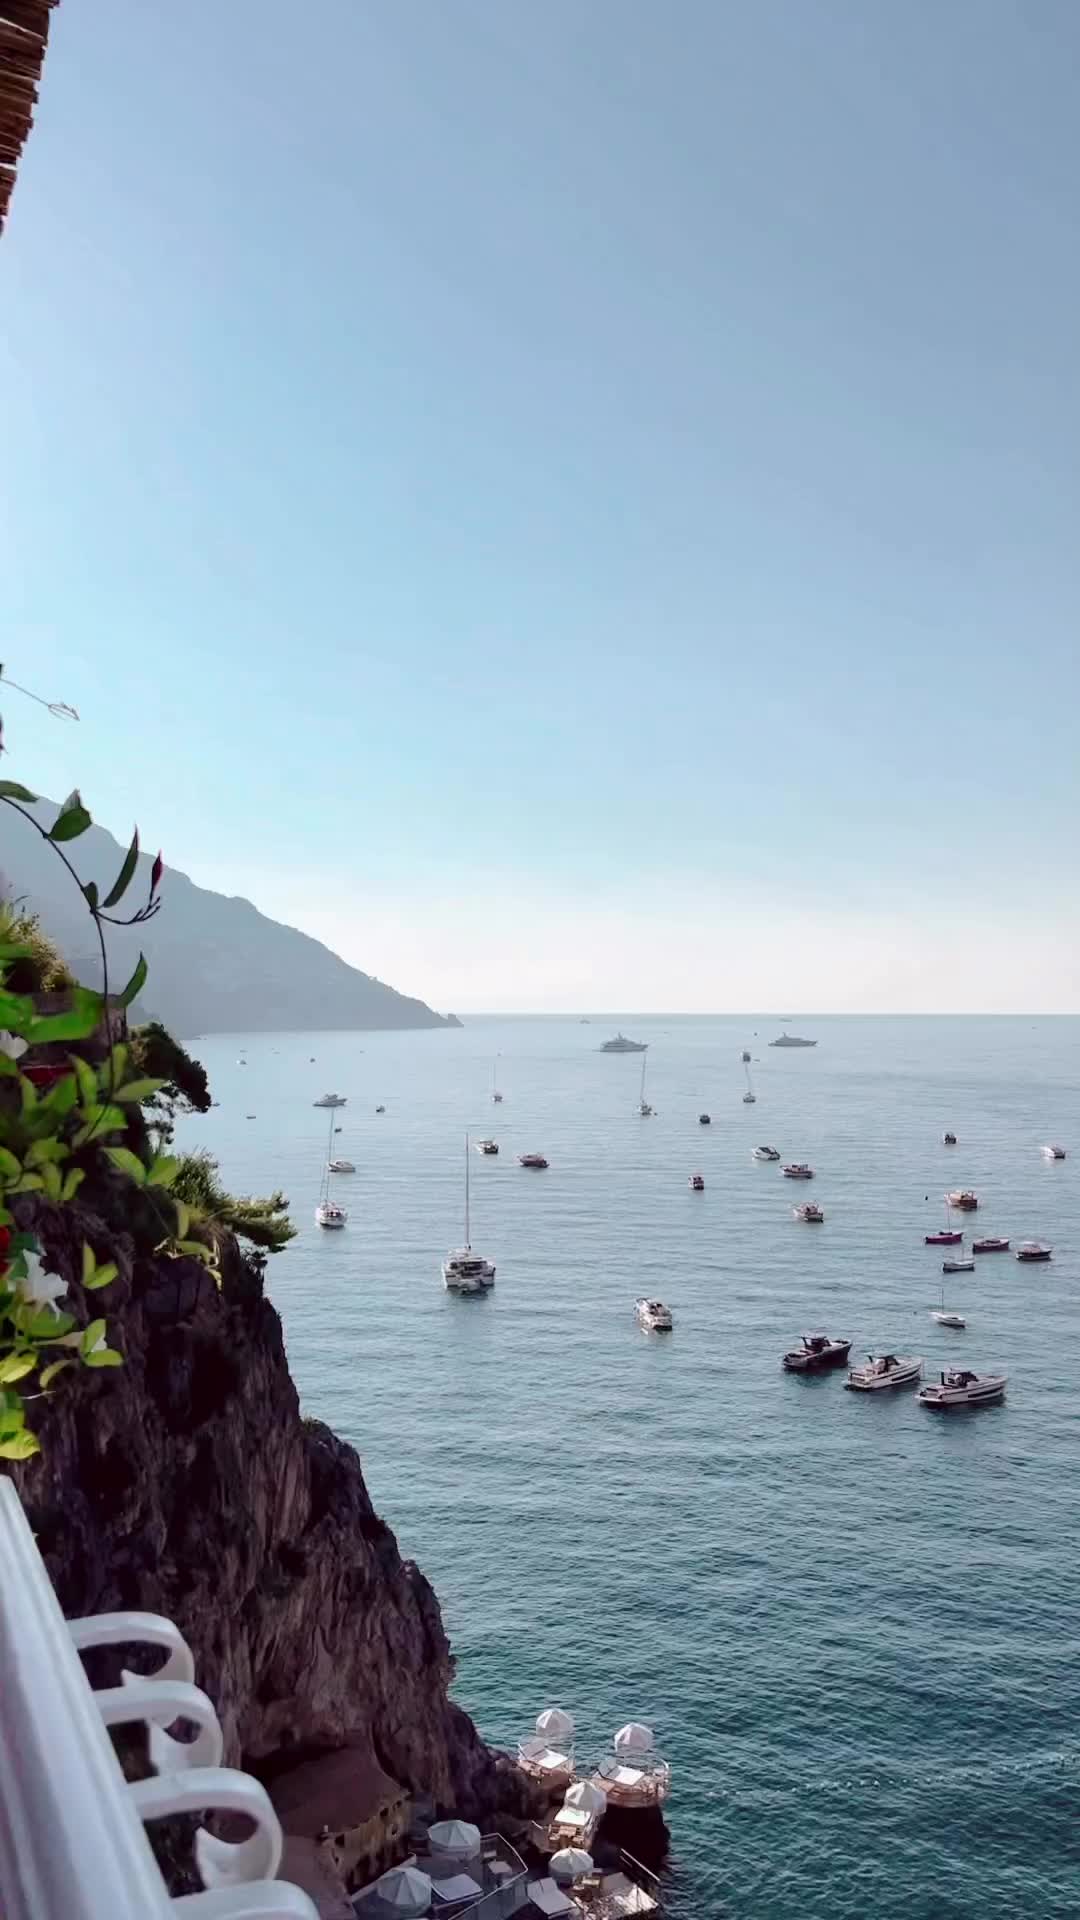 Experience the Magic of Positano on the Amalfi Coast